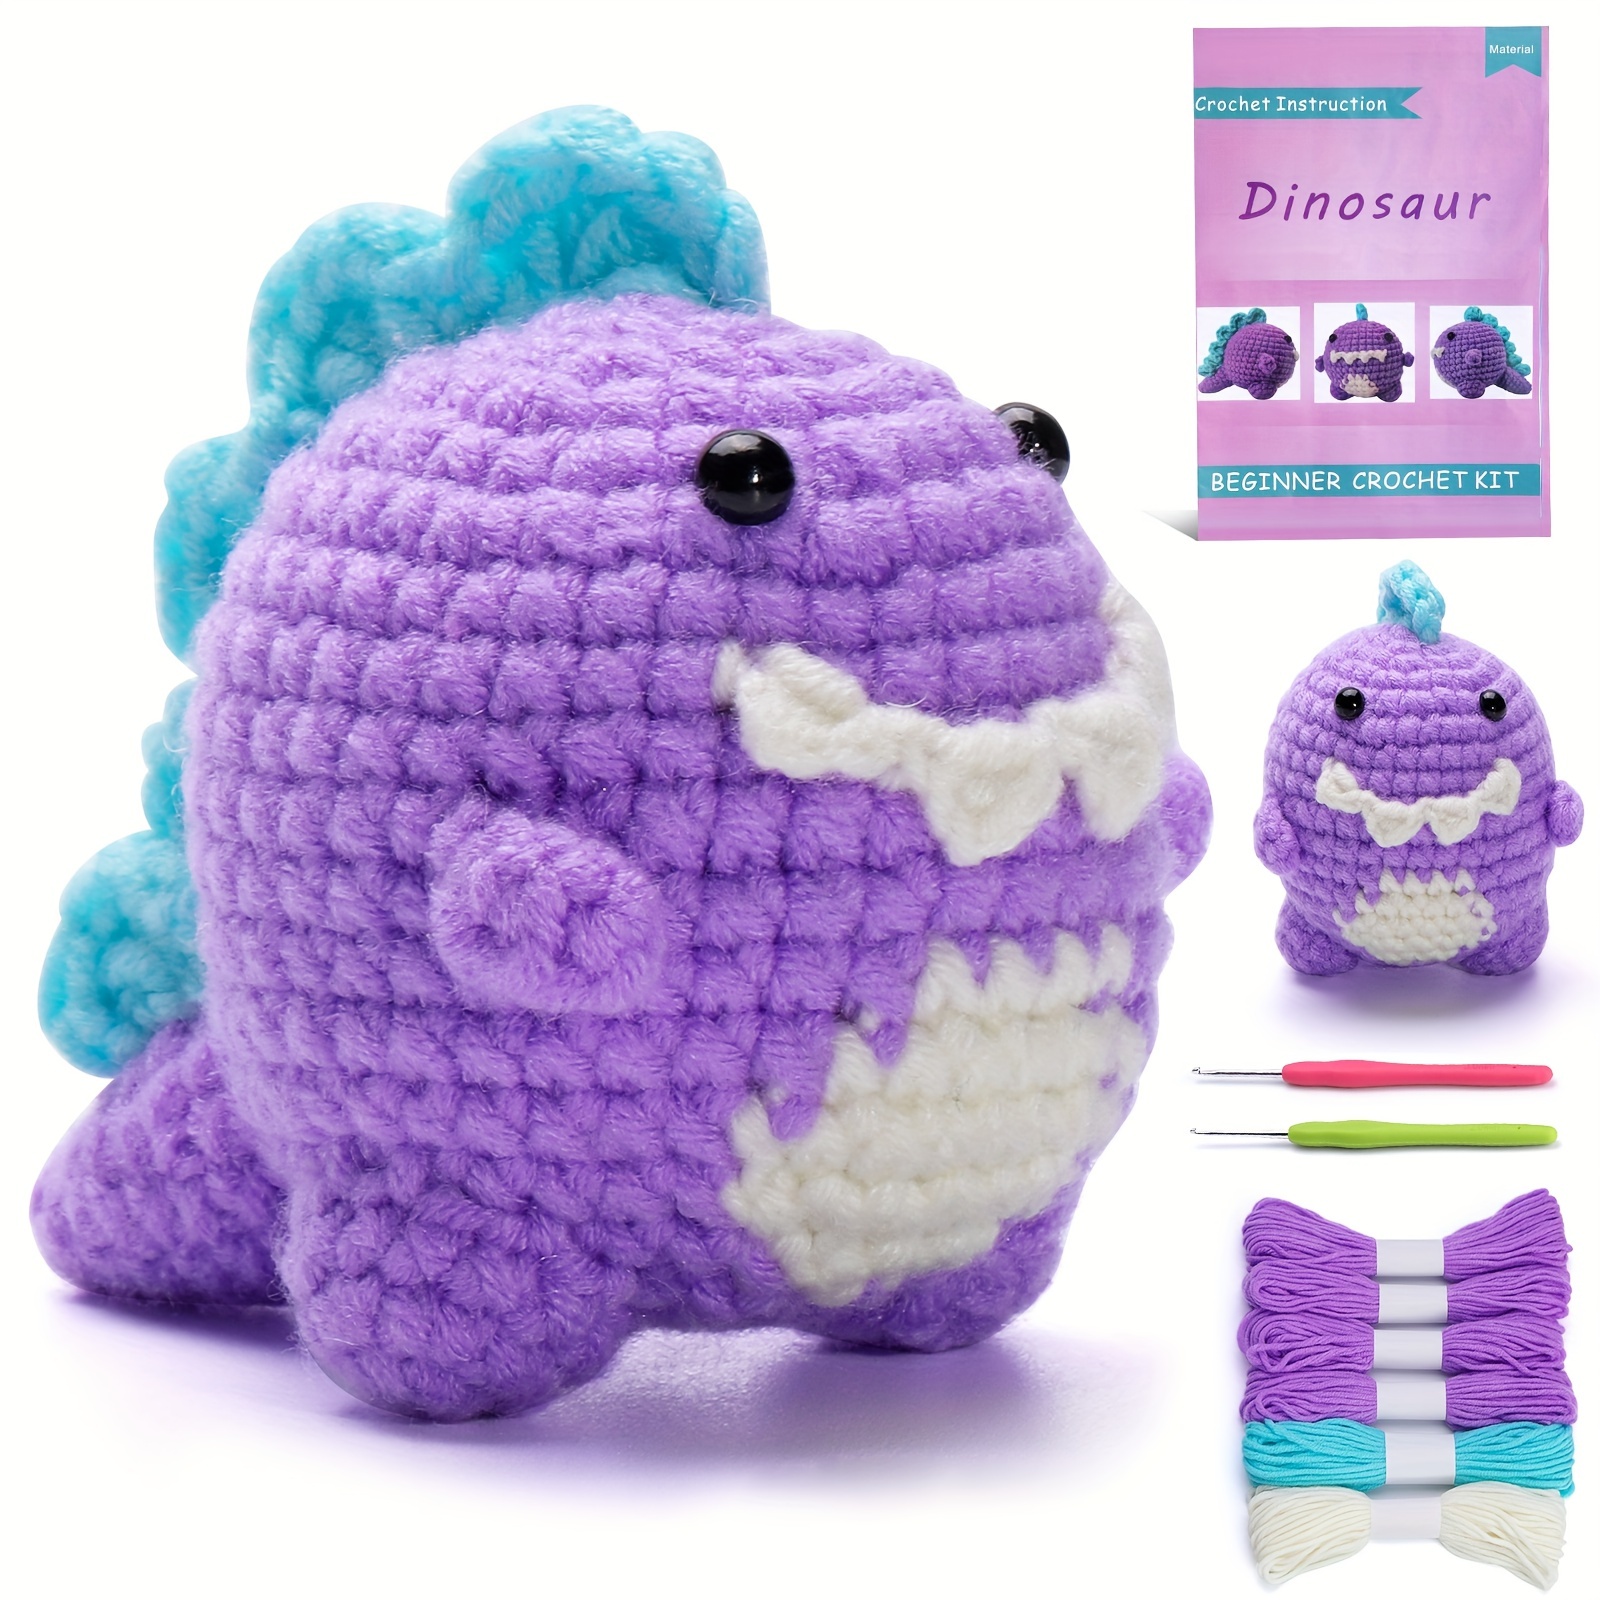  Crochet Kit for Beginners,Crochet Kits for Adults